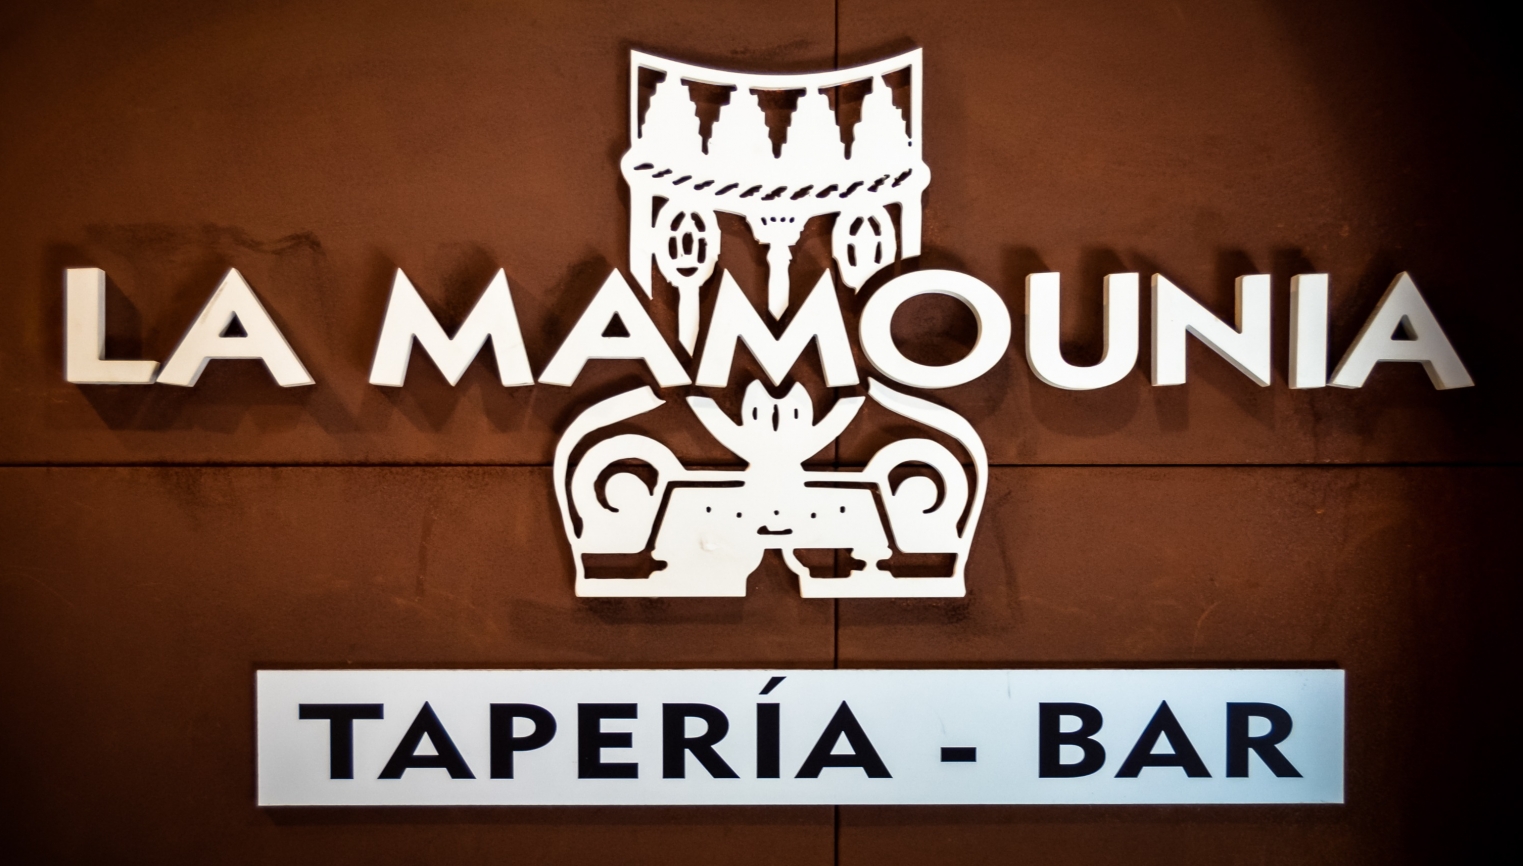 La Mamounia Taparía Bar - foto 1/7